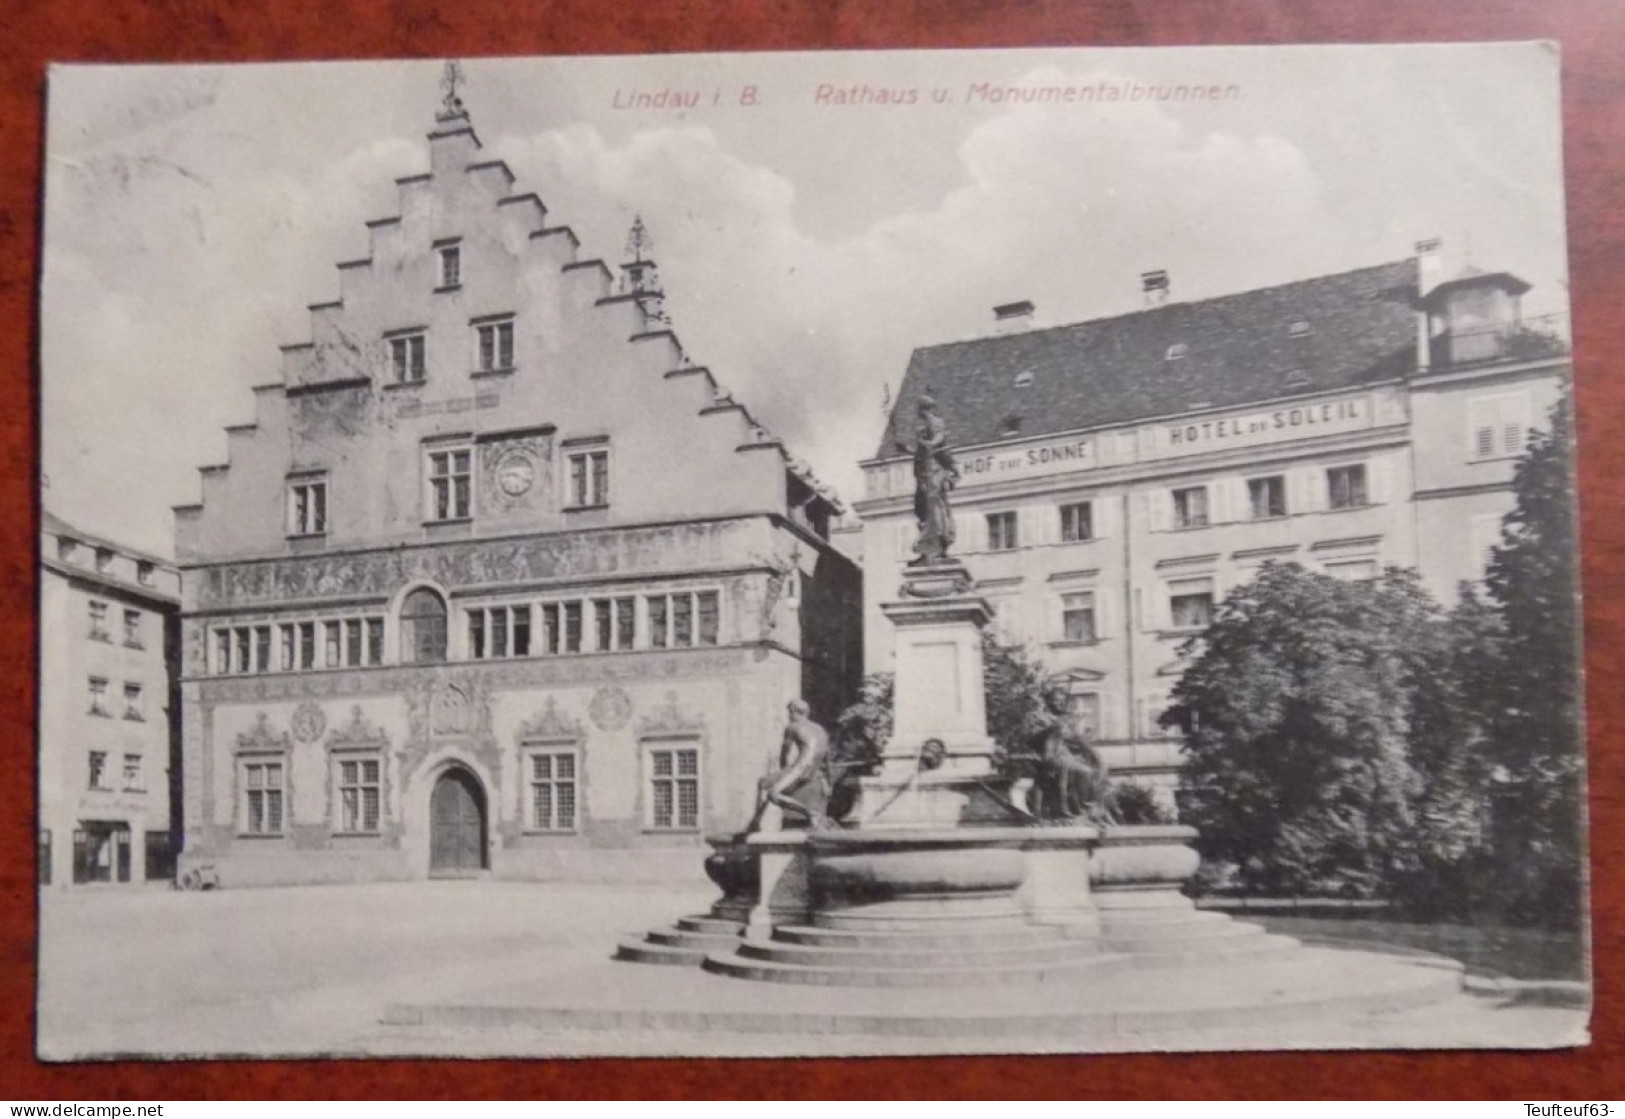 Cpa Lindau I. B. ; Rathaus U. Monumentalbrunnen - Lindau A. Bodensee